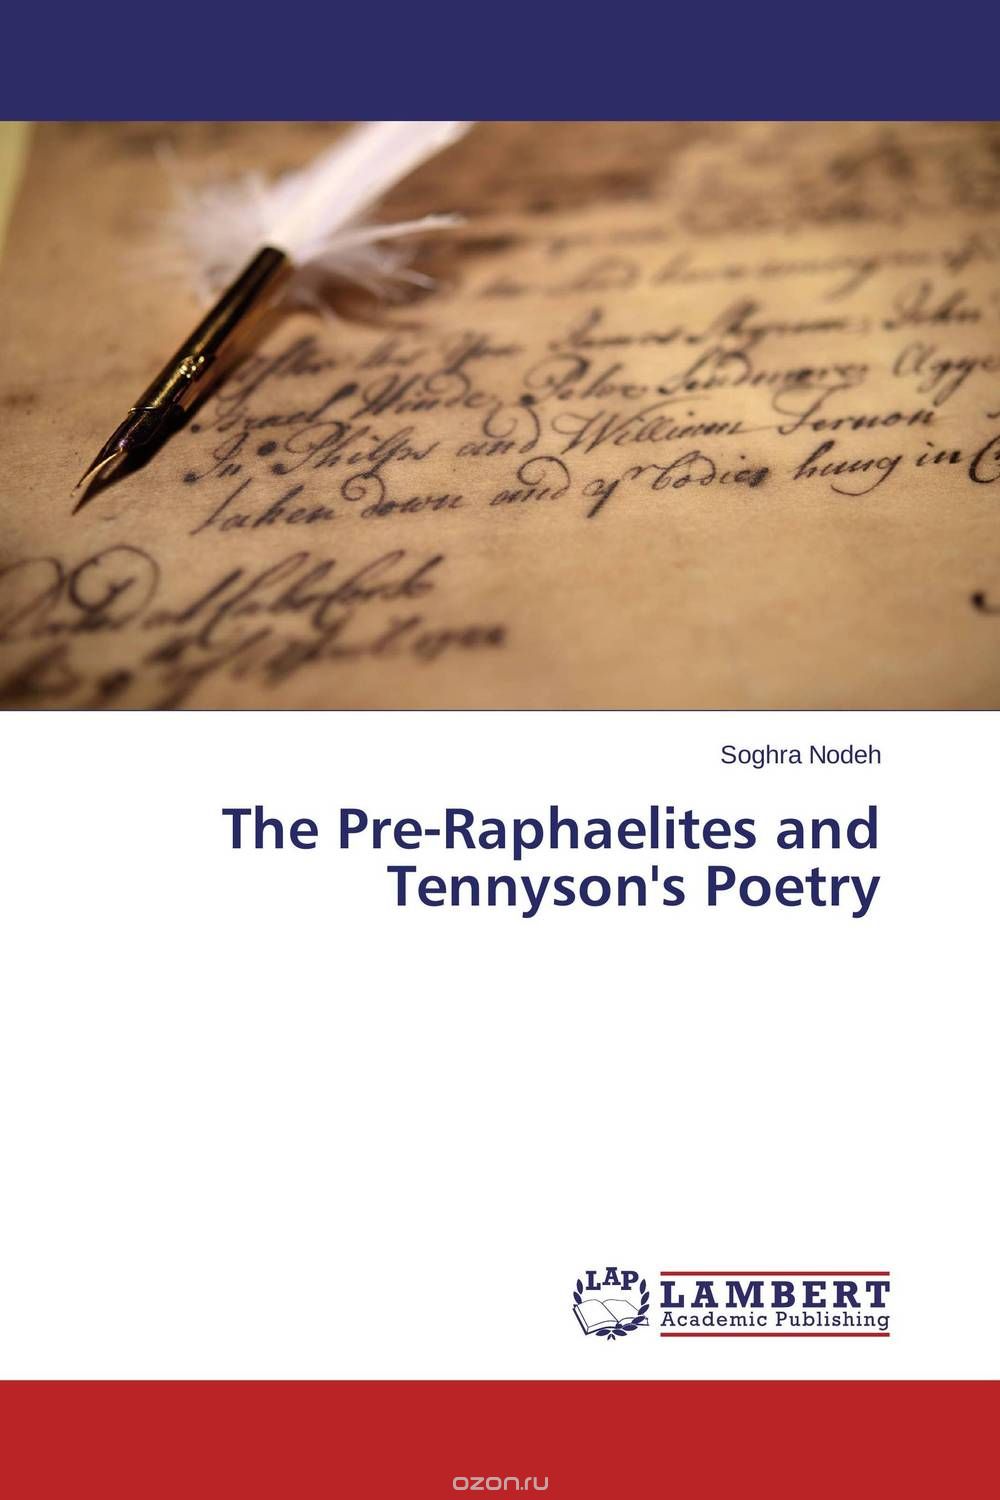 Скачать книгу "The Pre-Raphaelites and Tennyson's Poetry"